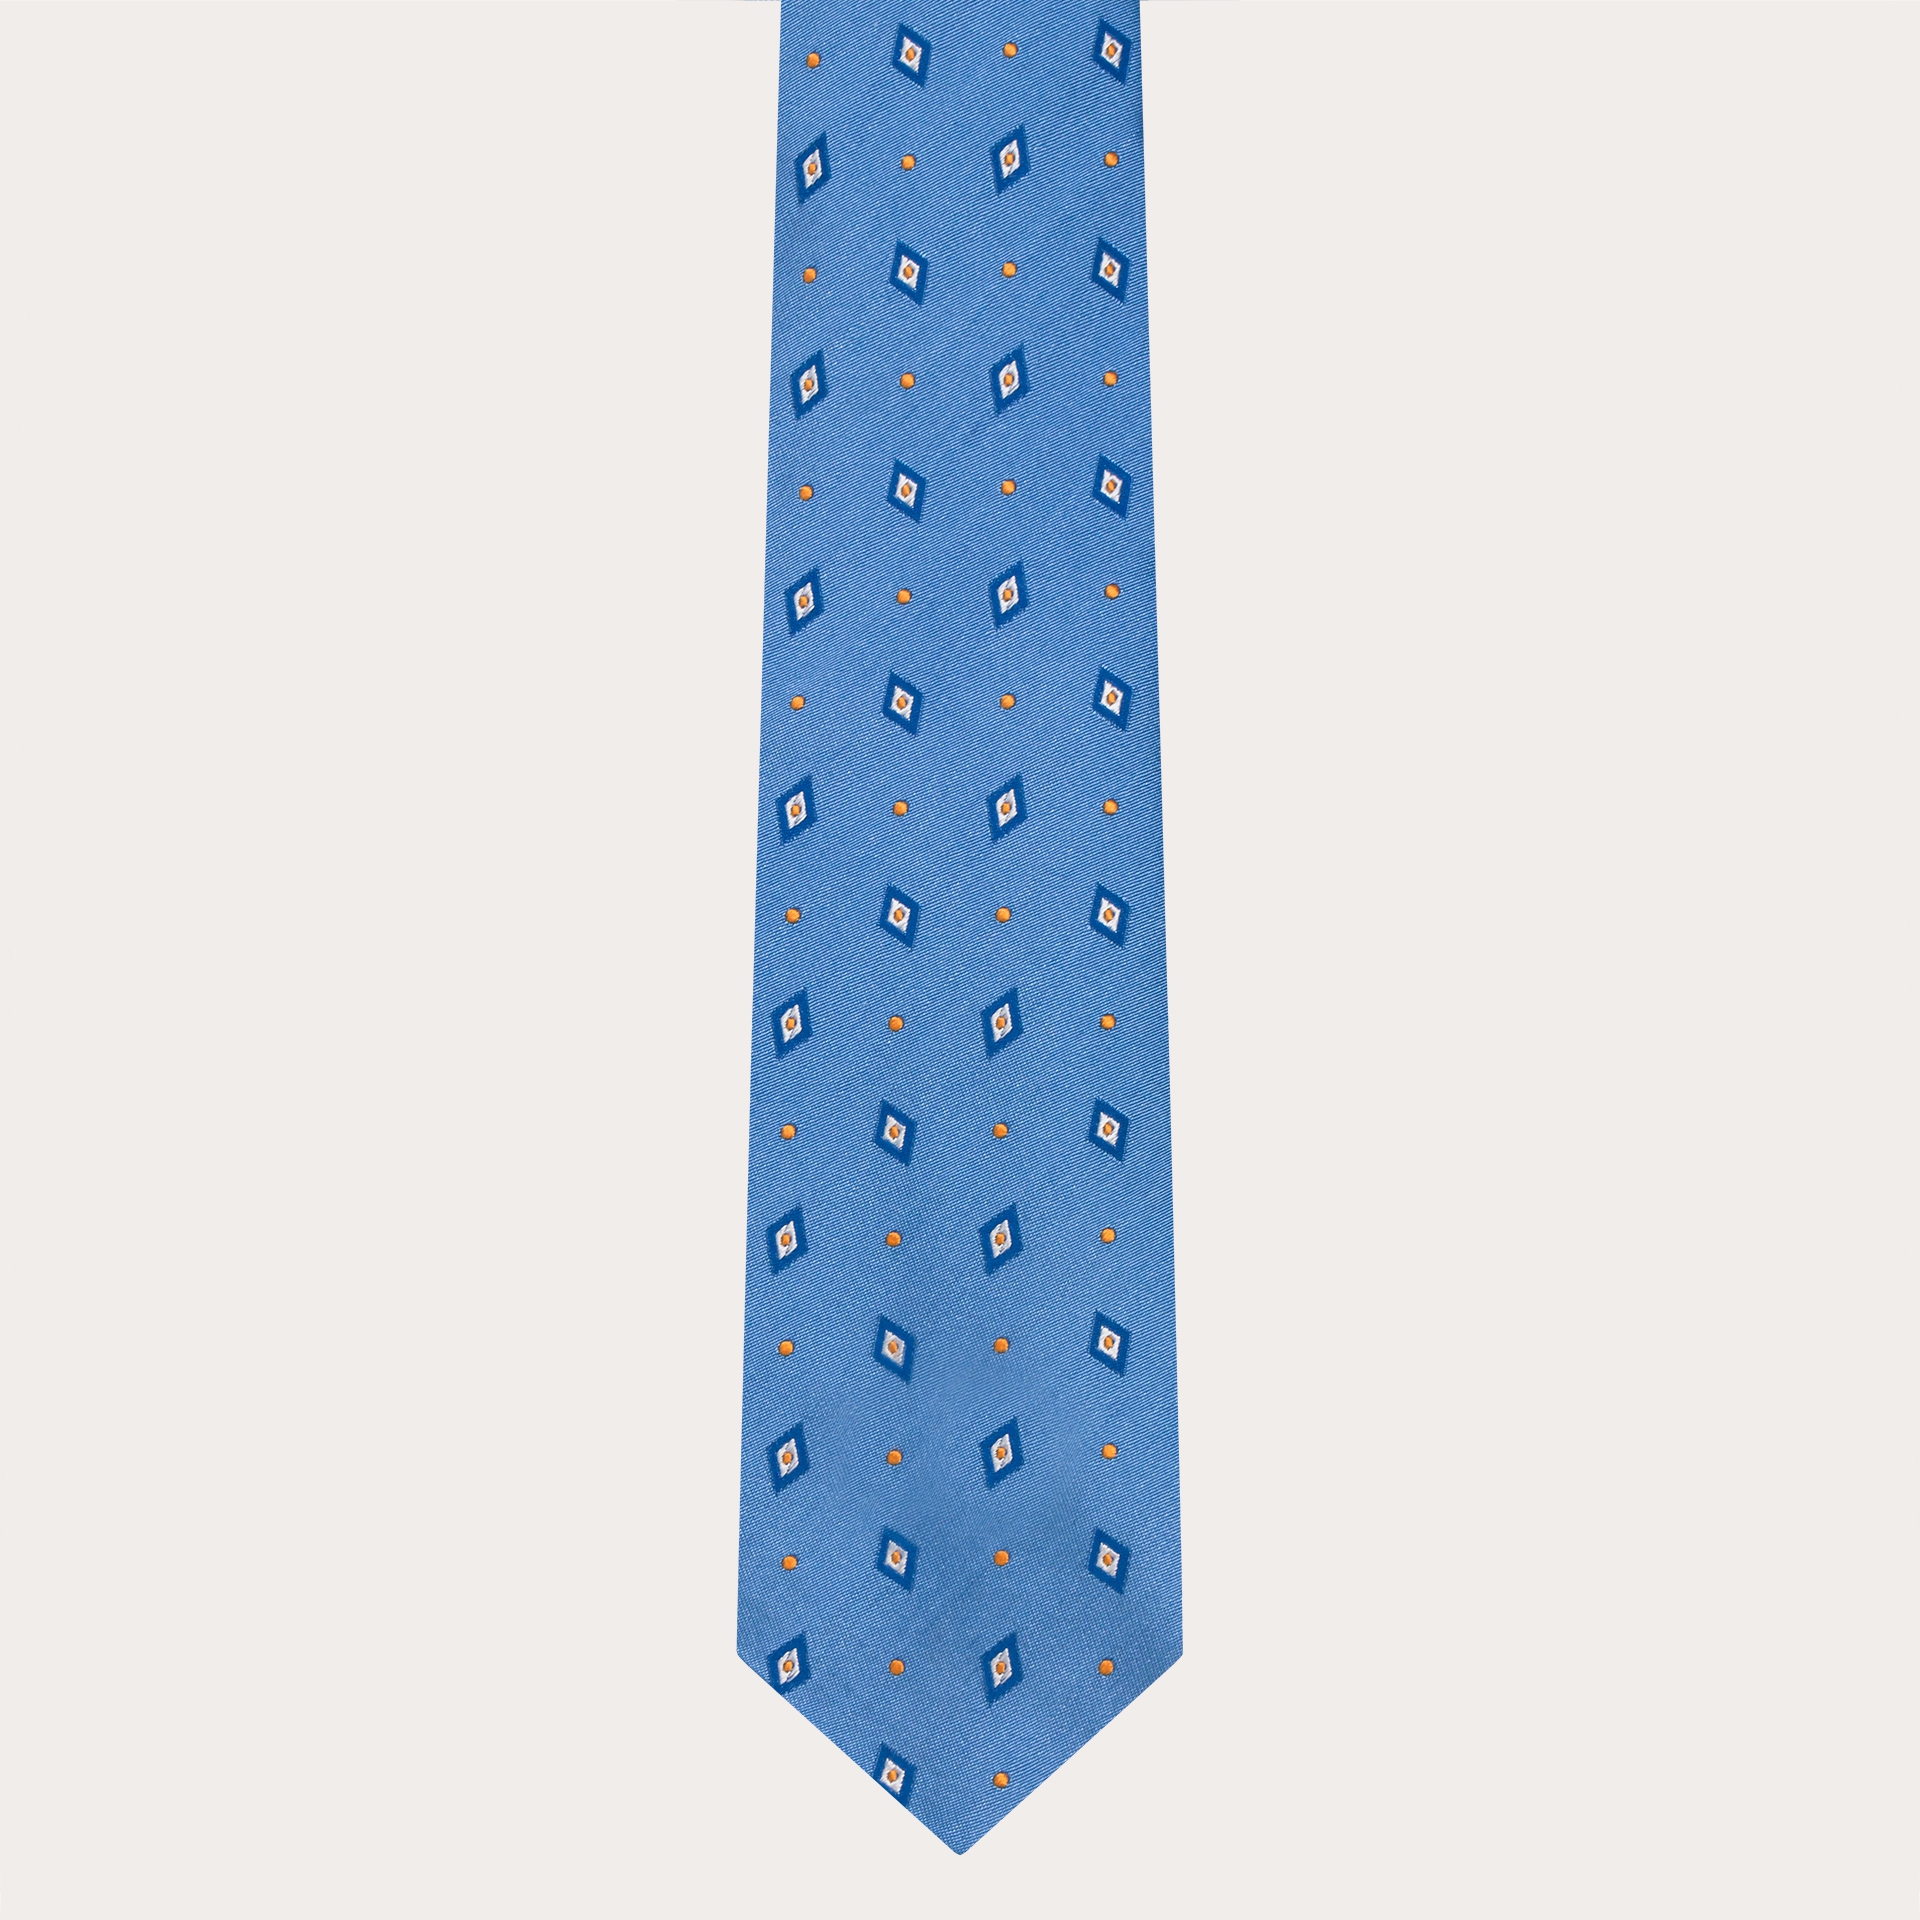 Cravate en soie jacquard pour costume, bleu clair avec losanges et pois bleus et jaunes